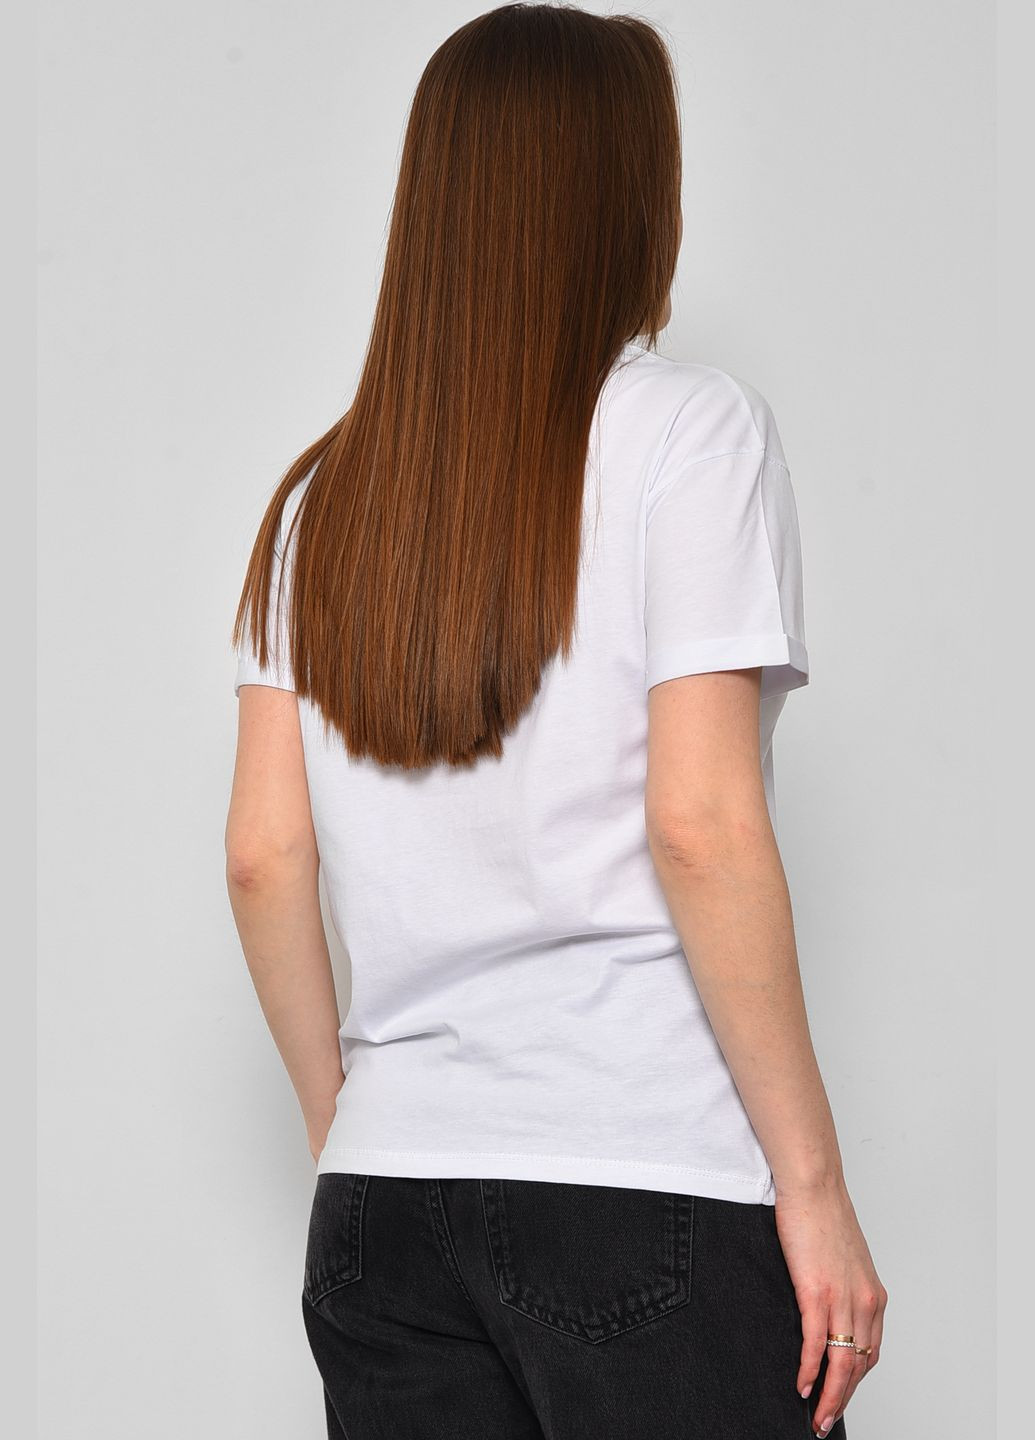 Белая летняя футболка женская белого цвета Let's Shop